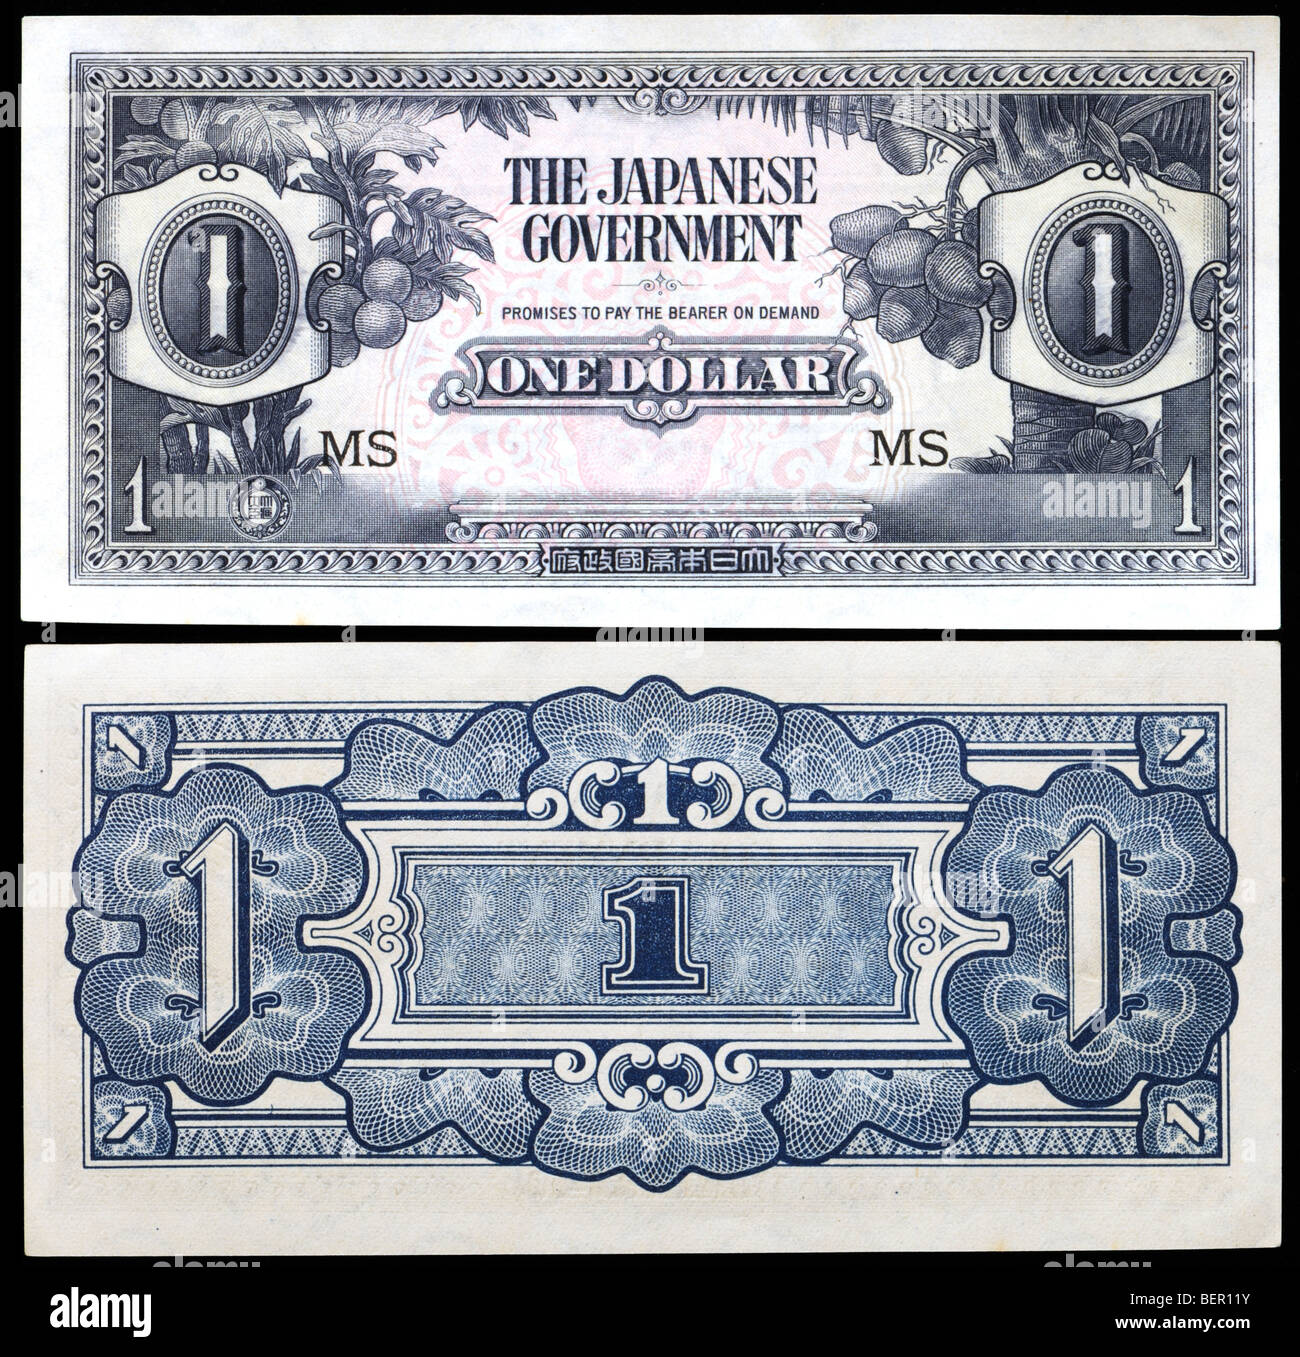 Billet de un dollar émis par le Gouvernement japonais pendant l'occupation japonaise de Malaya 1942-1945. De l'argent 'Banana' Banque D'Images